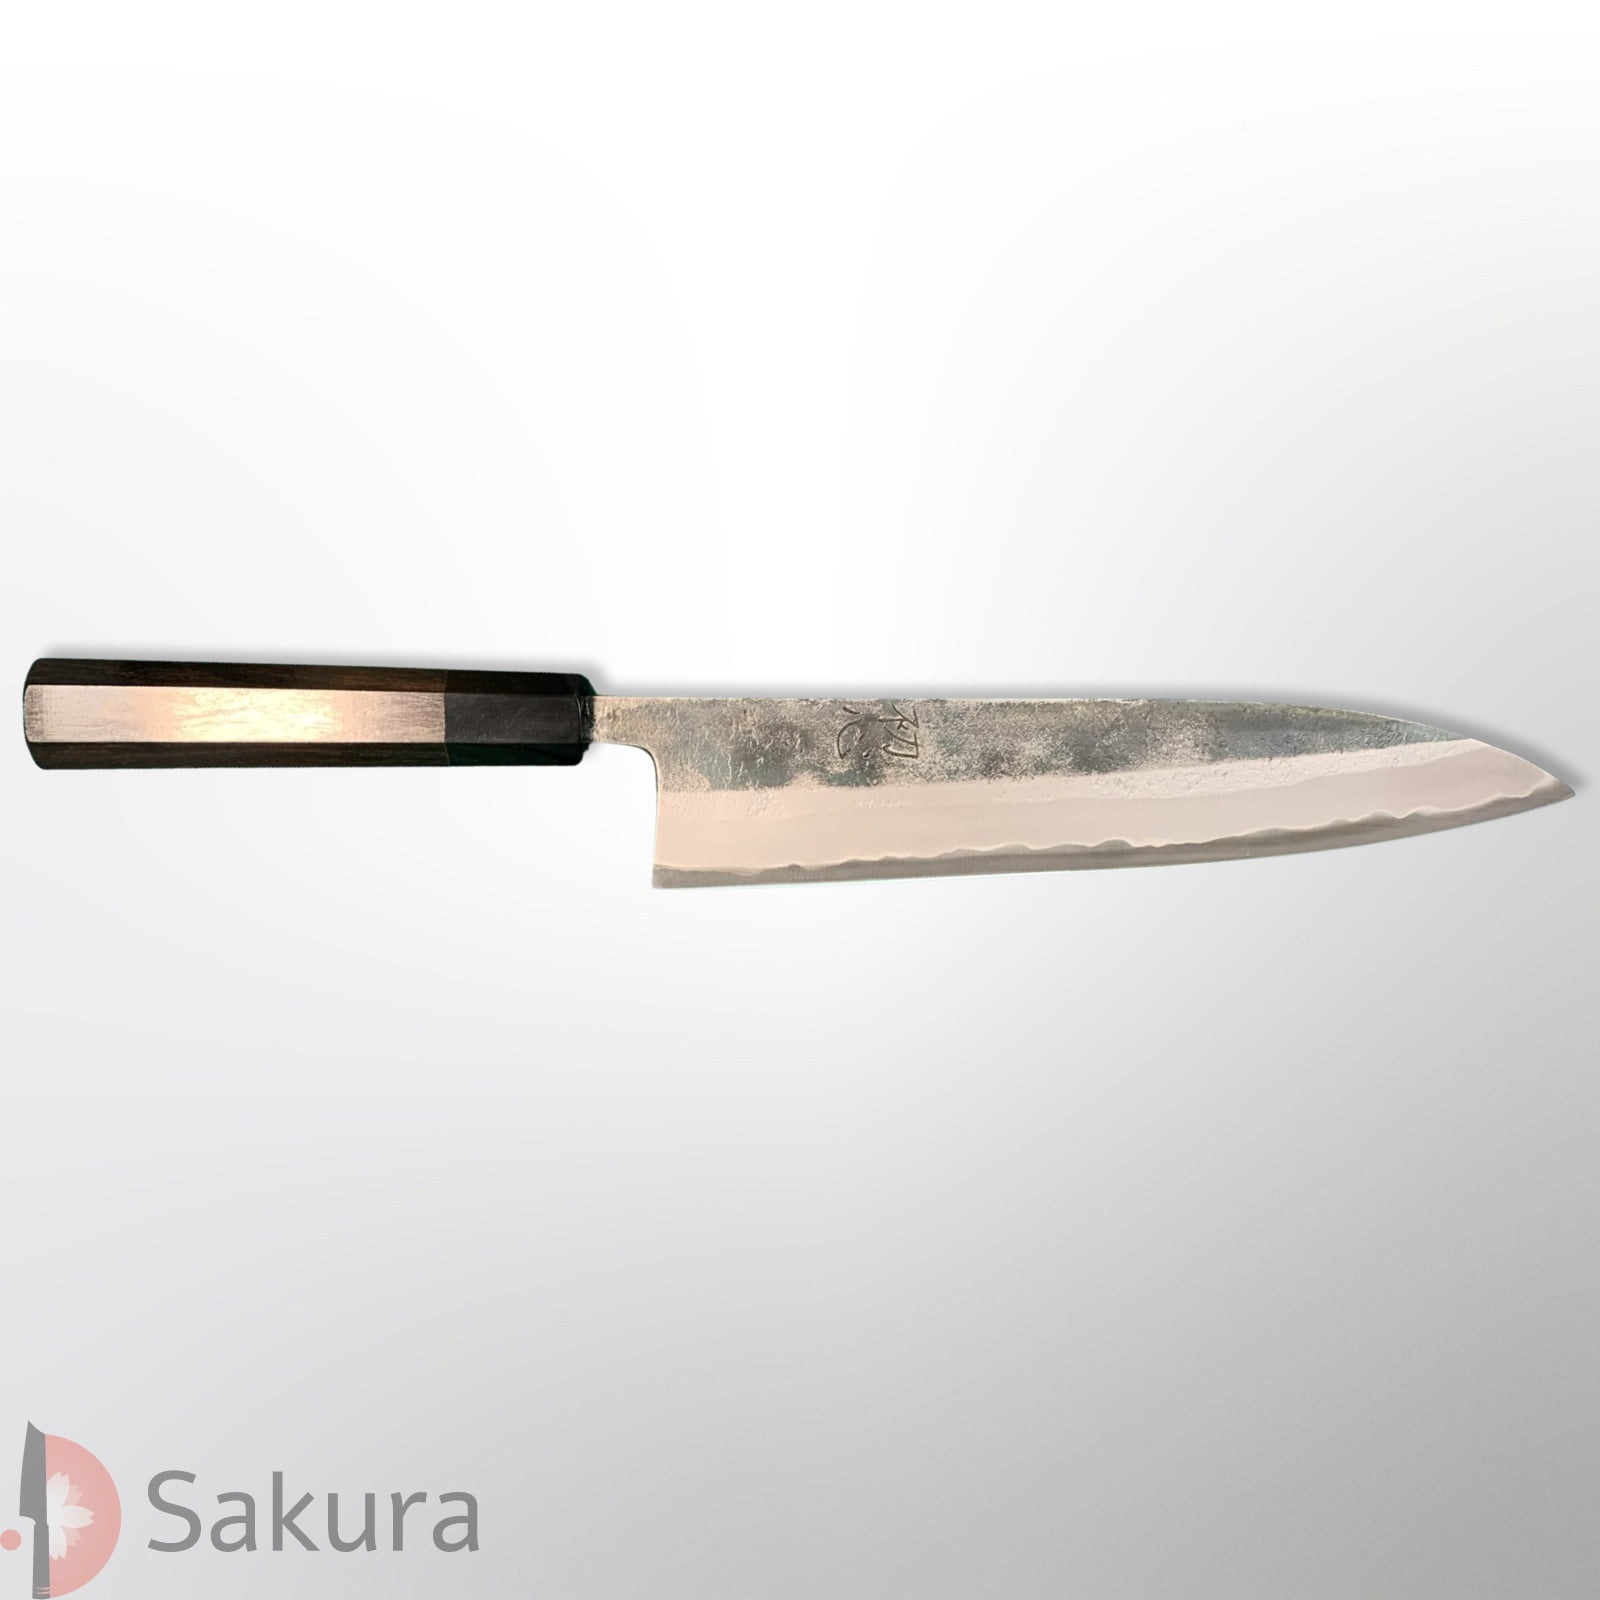 סכין שף רב-תכליתית גִּיוּטוֹ 240מ״מ מחושלת בעבודת יד 3 שכבות: פלדת פחמן יפנית מתקדמת מסוג Aogami Super גימור קורואוצ׳י האטסו קוקורו יפן – SKAHATSKUROG2417